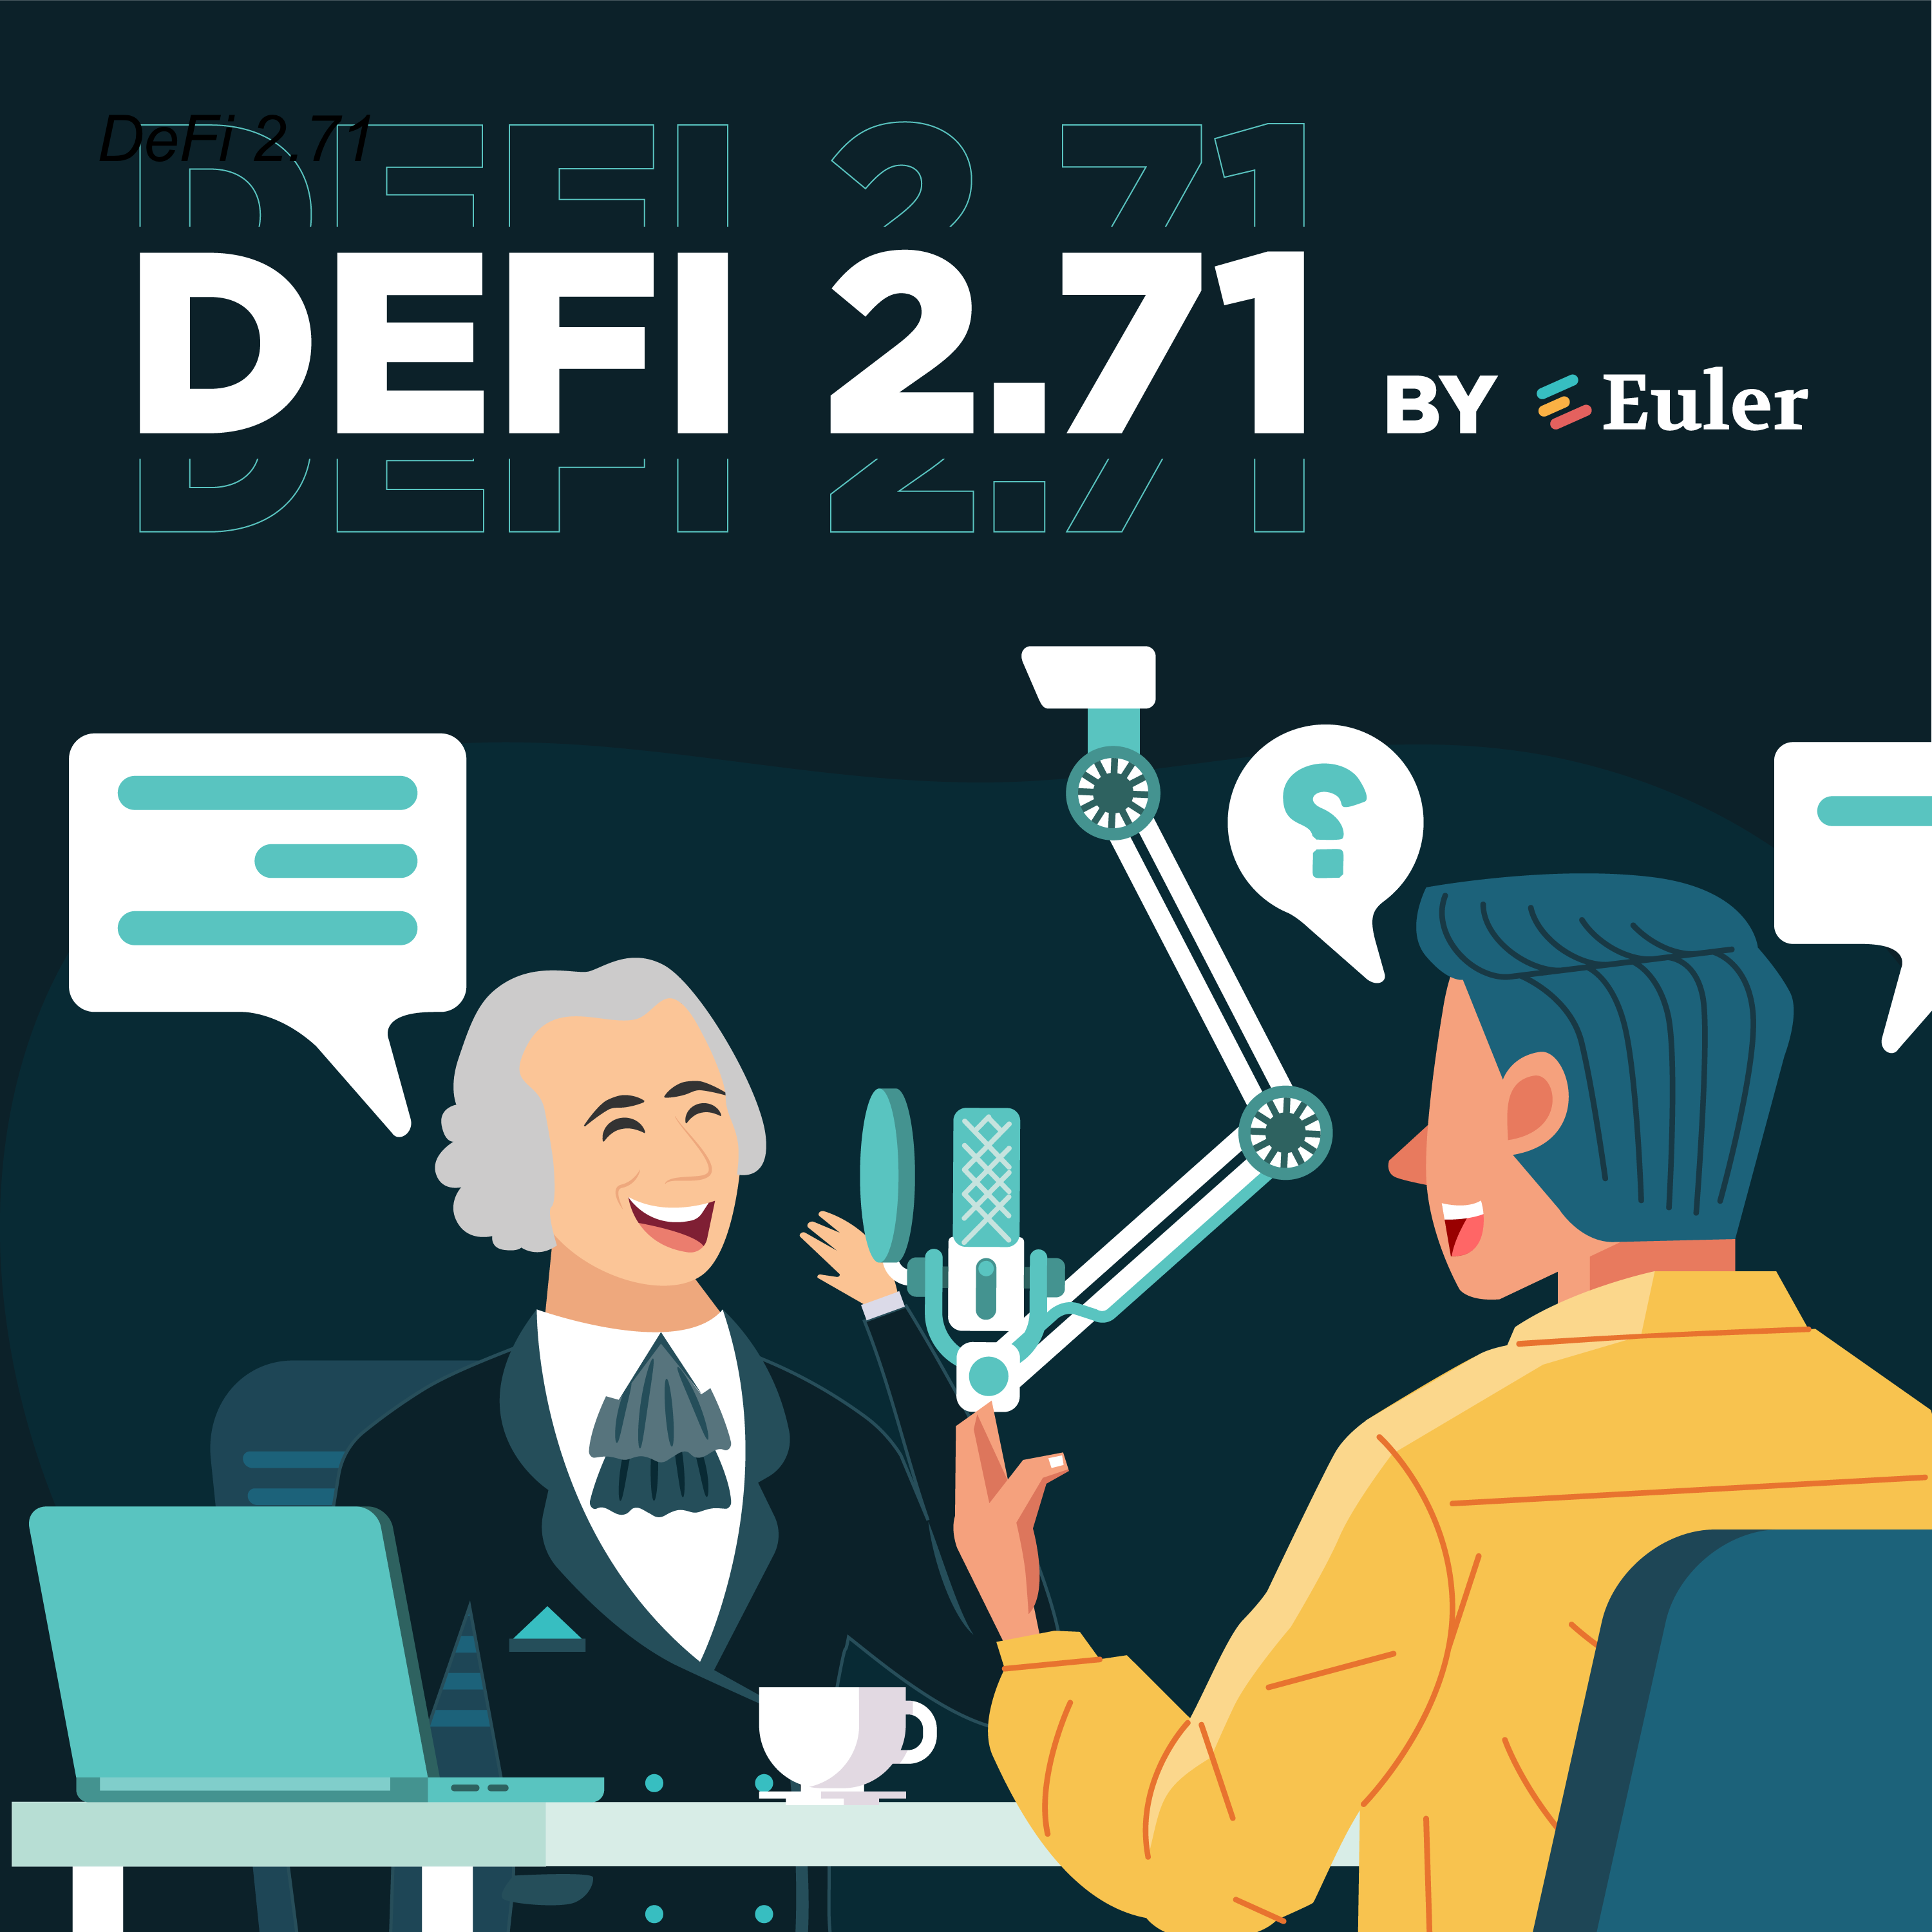 DeFi 2.71